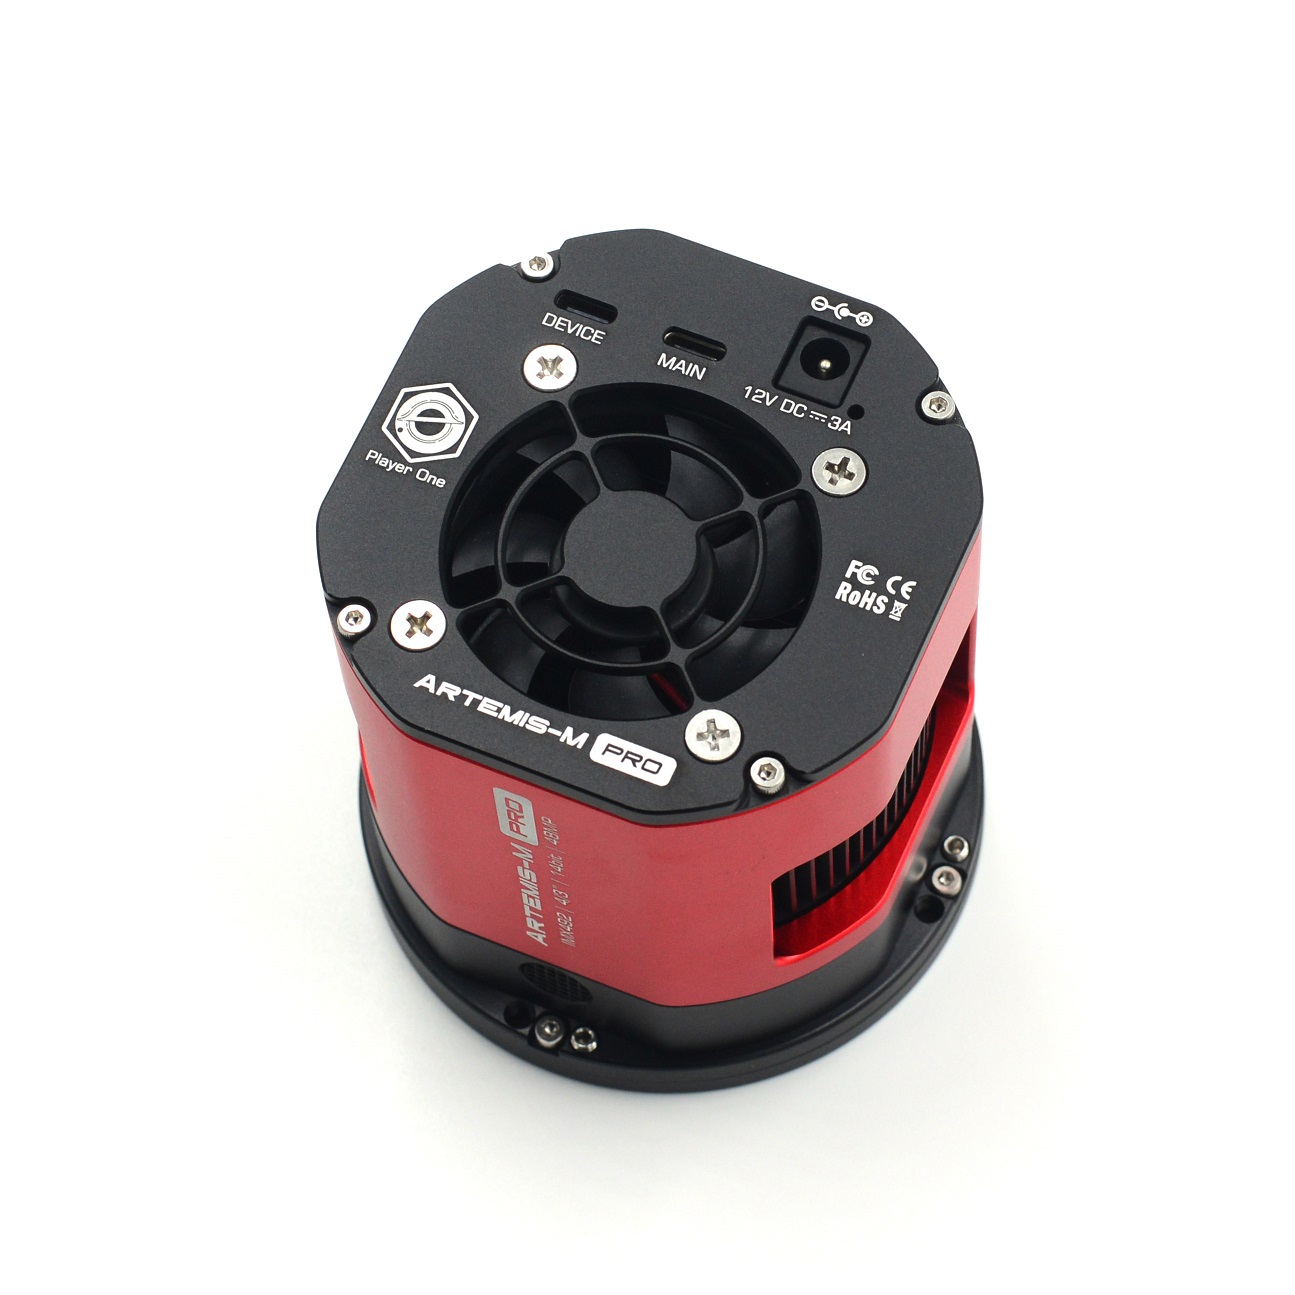  Camera Player One Artemis Mono Pro con sensore retro illuminato Starvis IMX492
